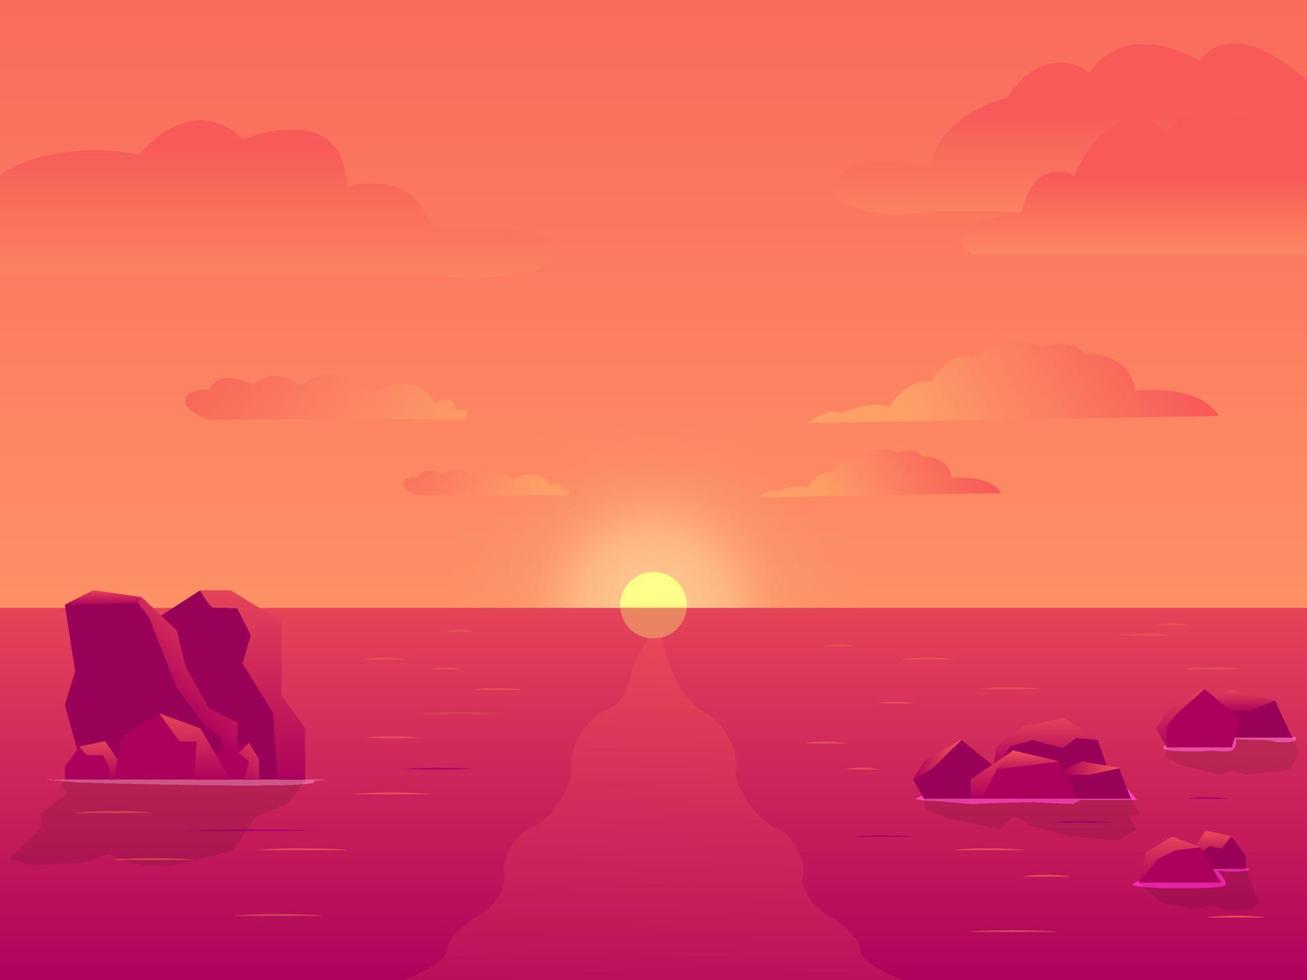 solnedgång eller soluppgång i havet, bakgrund av naturliga landskap, rosa moln. solen skiner över havet med stenar som sticker upp ur vattenytan. eftermiddags- eller morgonvy vektor